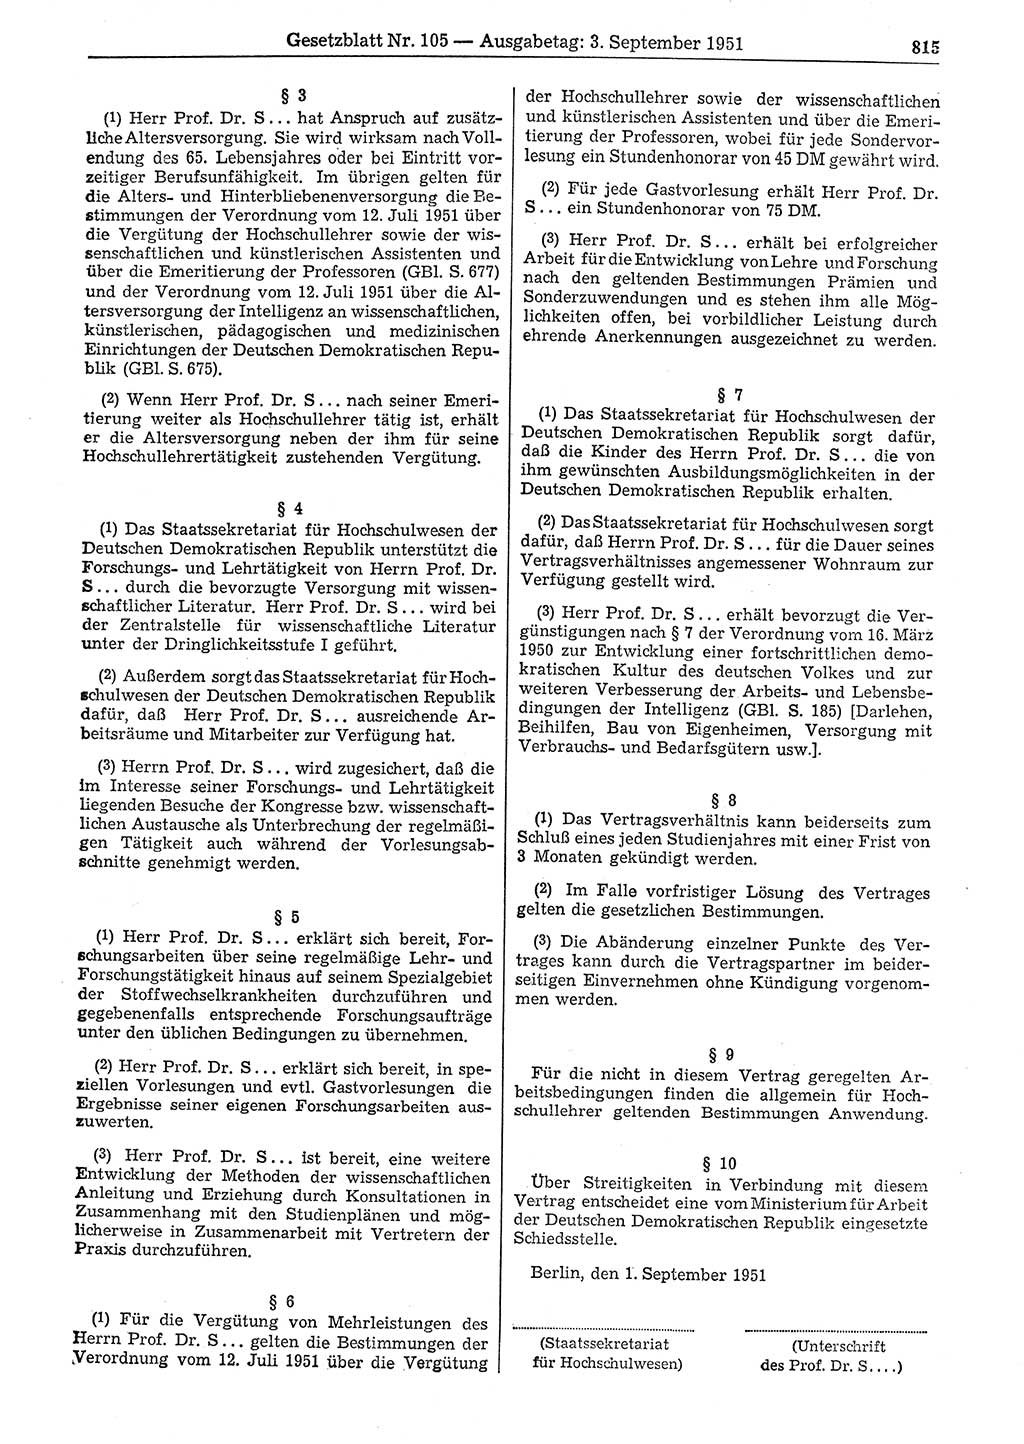 Gesetzblatt (GBl.) der Deutschen Demokratischen Republik (DDR) 1951, Seite 815 (GBl. DDR 1951, S. 815)